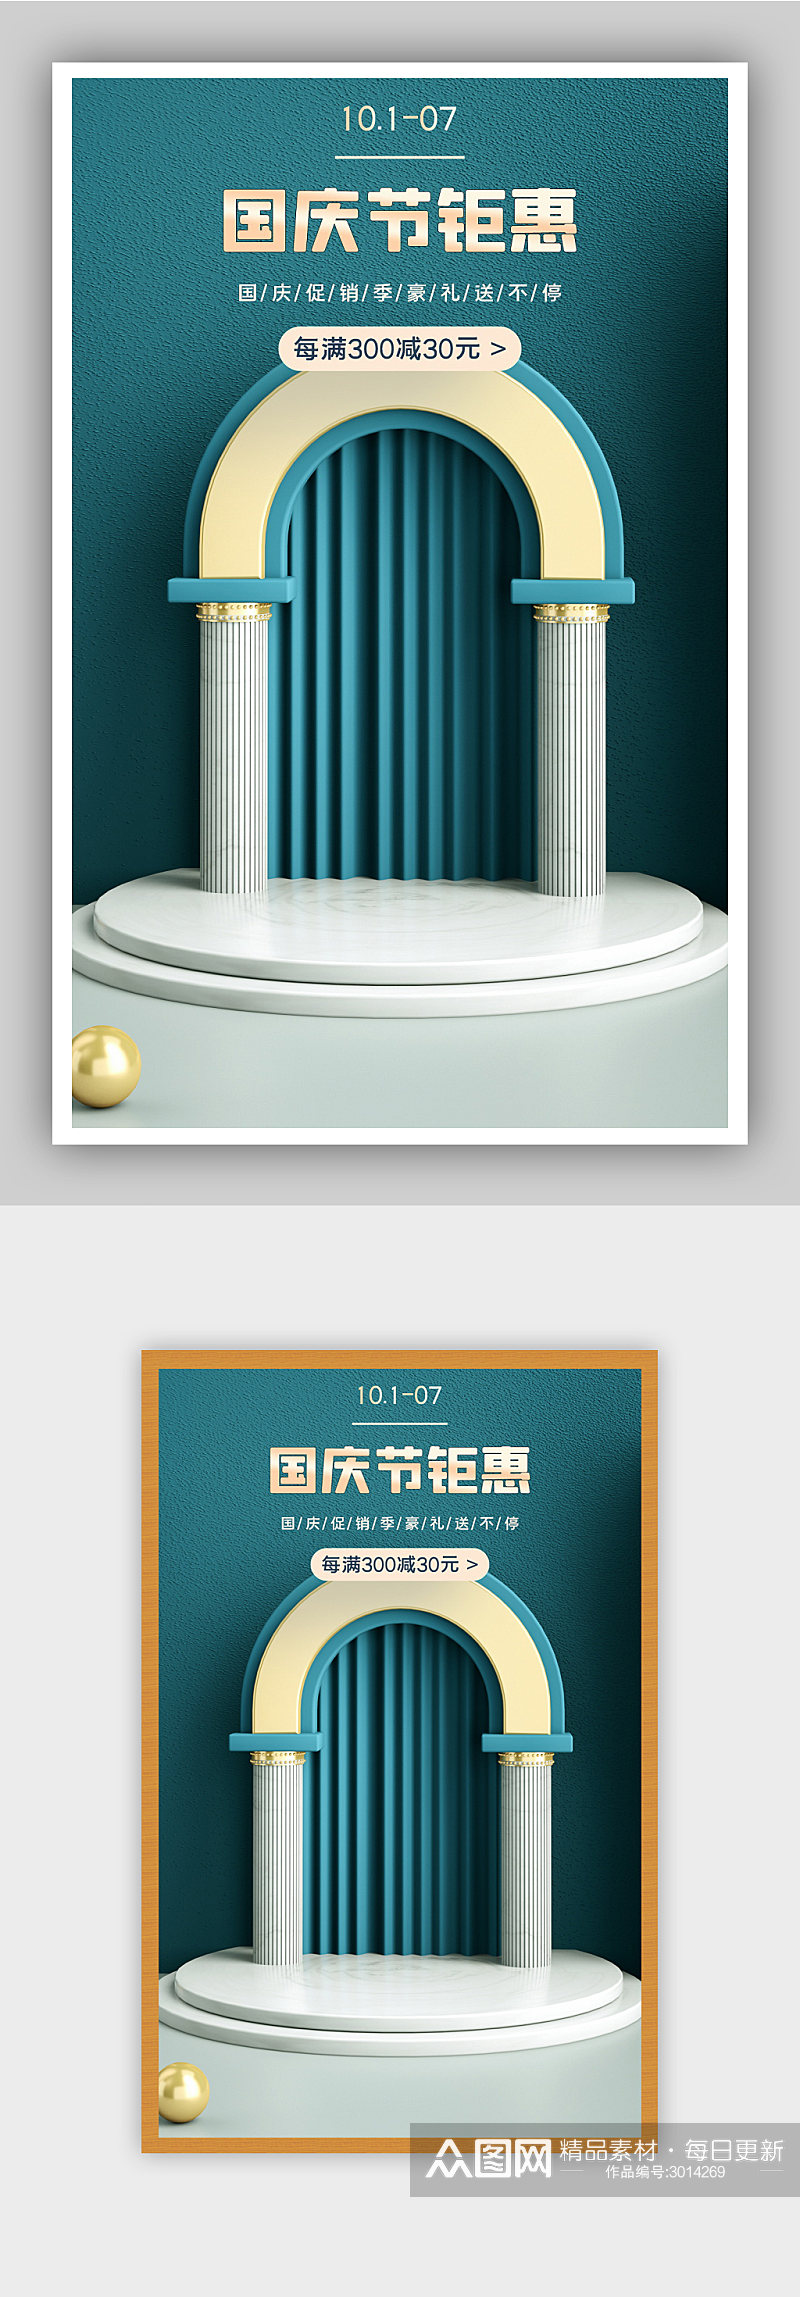 青蓝色中国传统节日国庆节促销活动海报素材